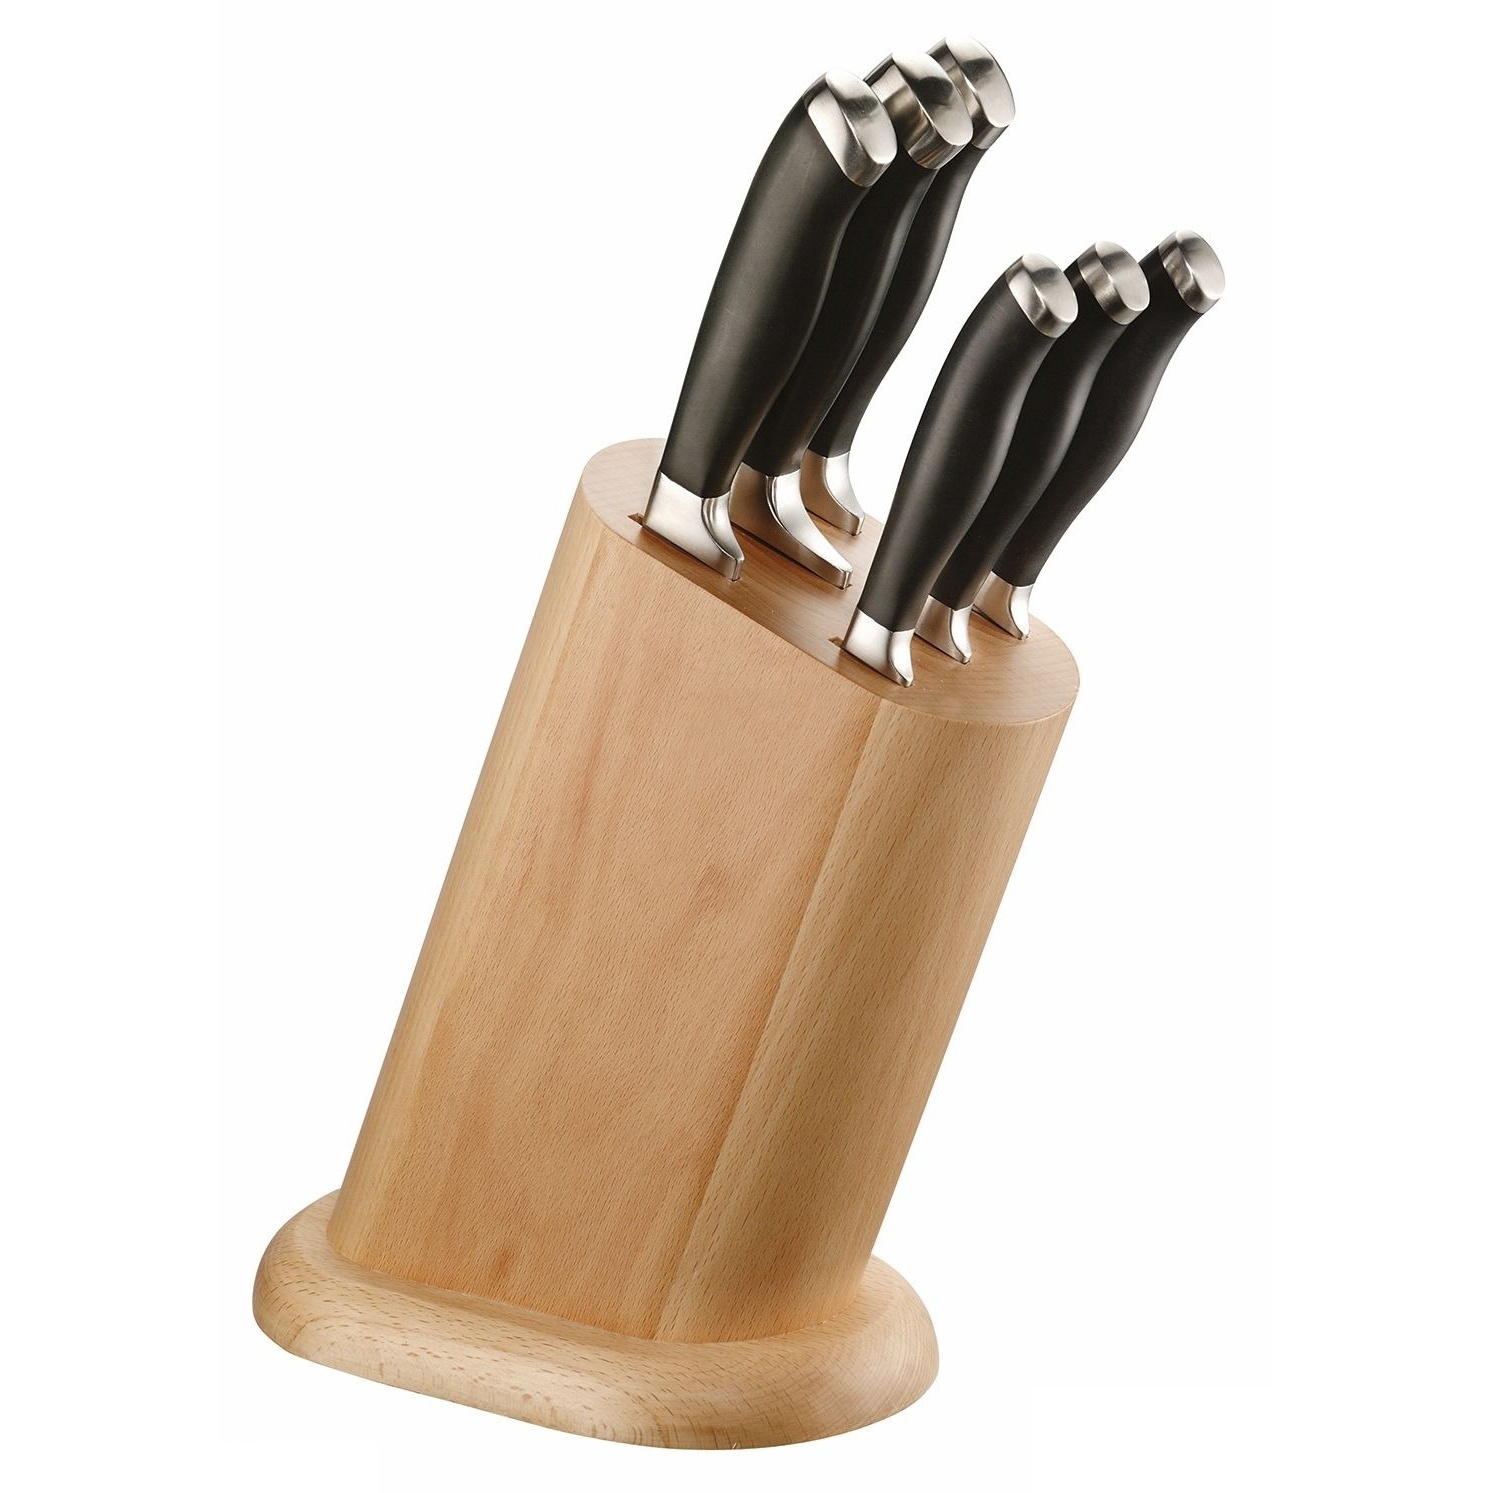 Набор ножей Pintinox 6 шт в деревянной подставке кухонный набор прихватка варежка фартук